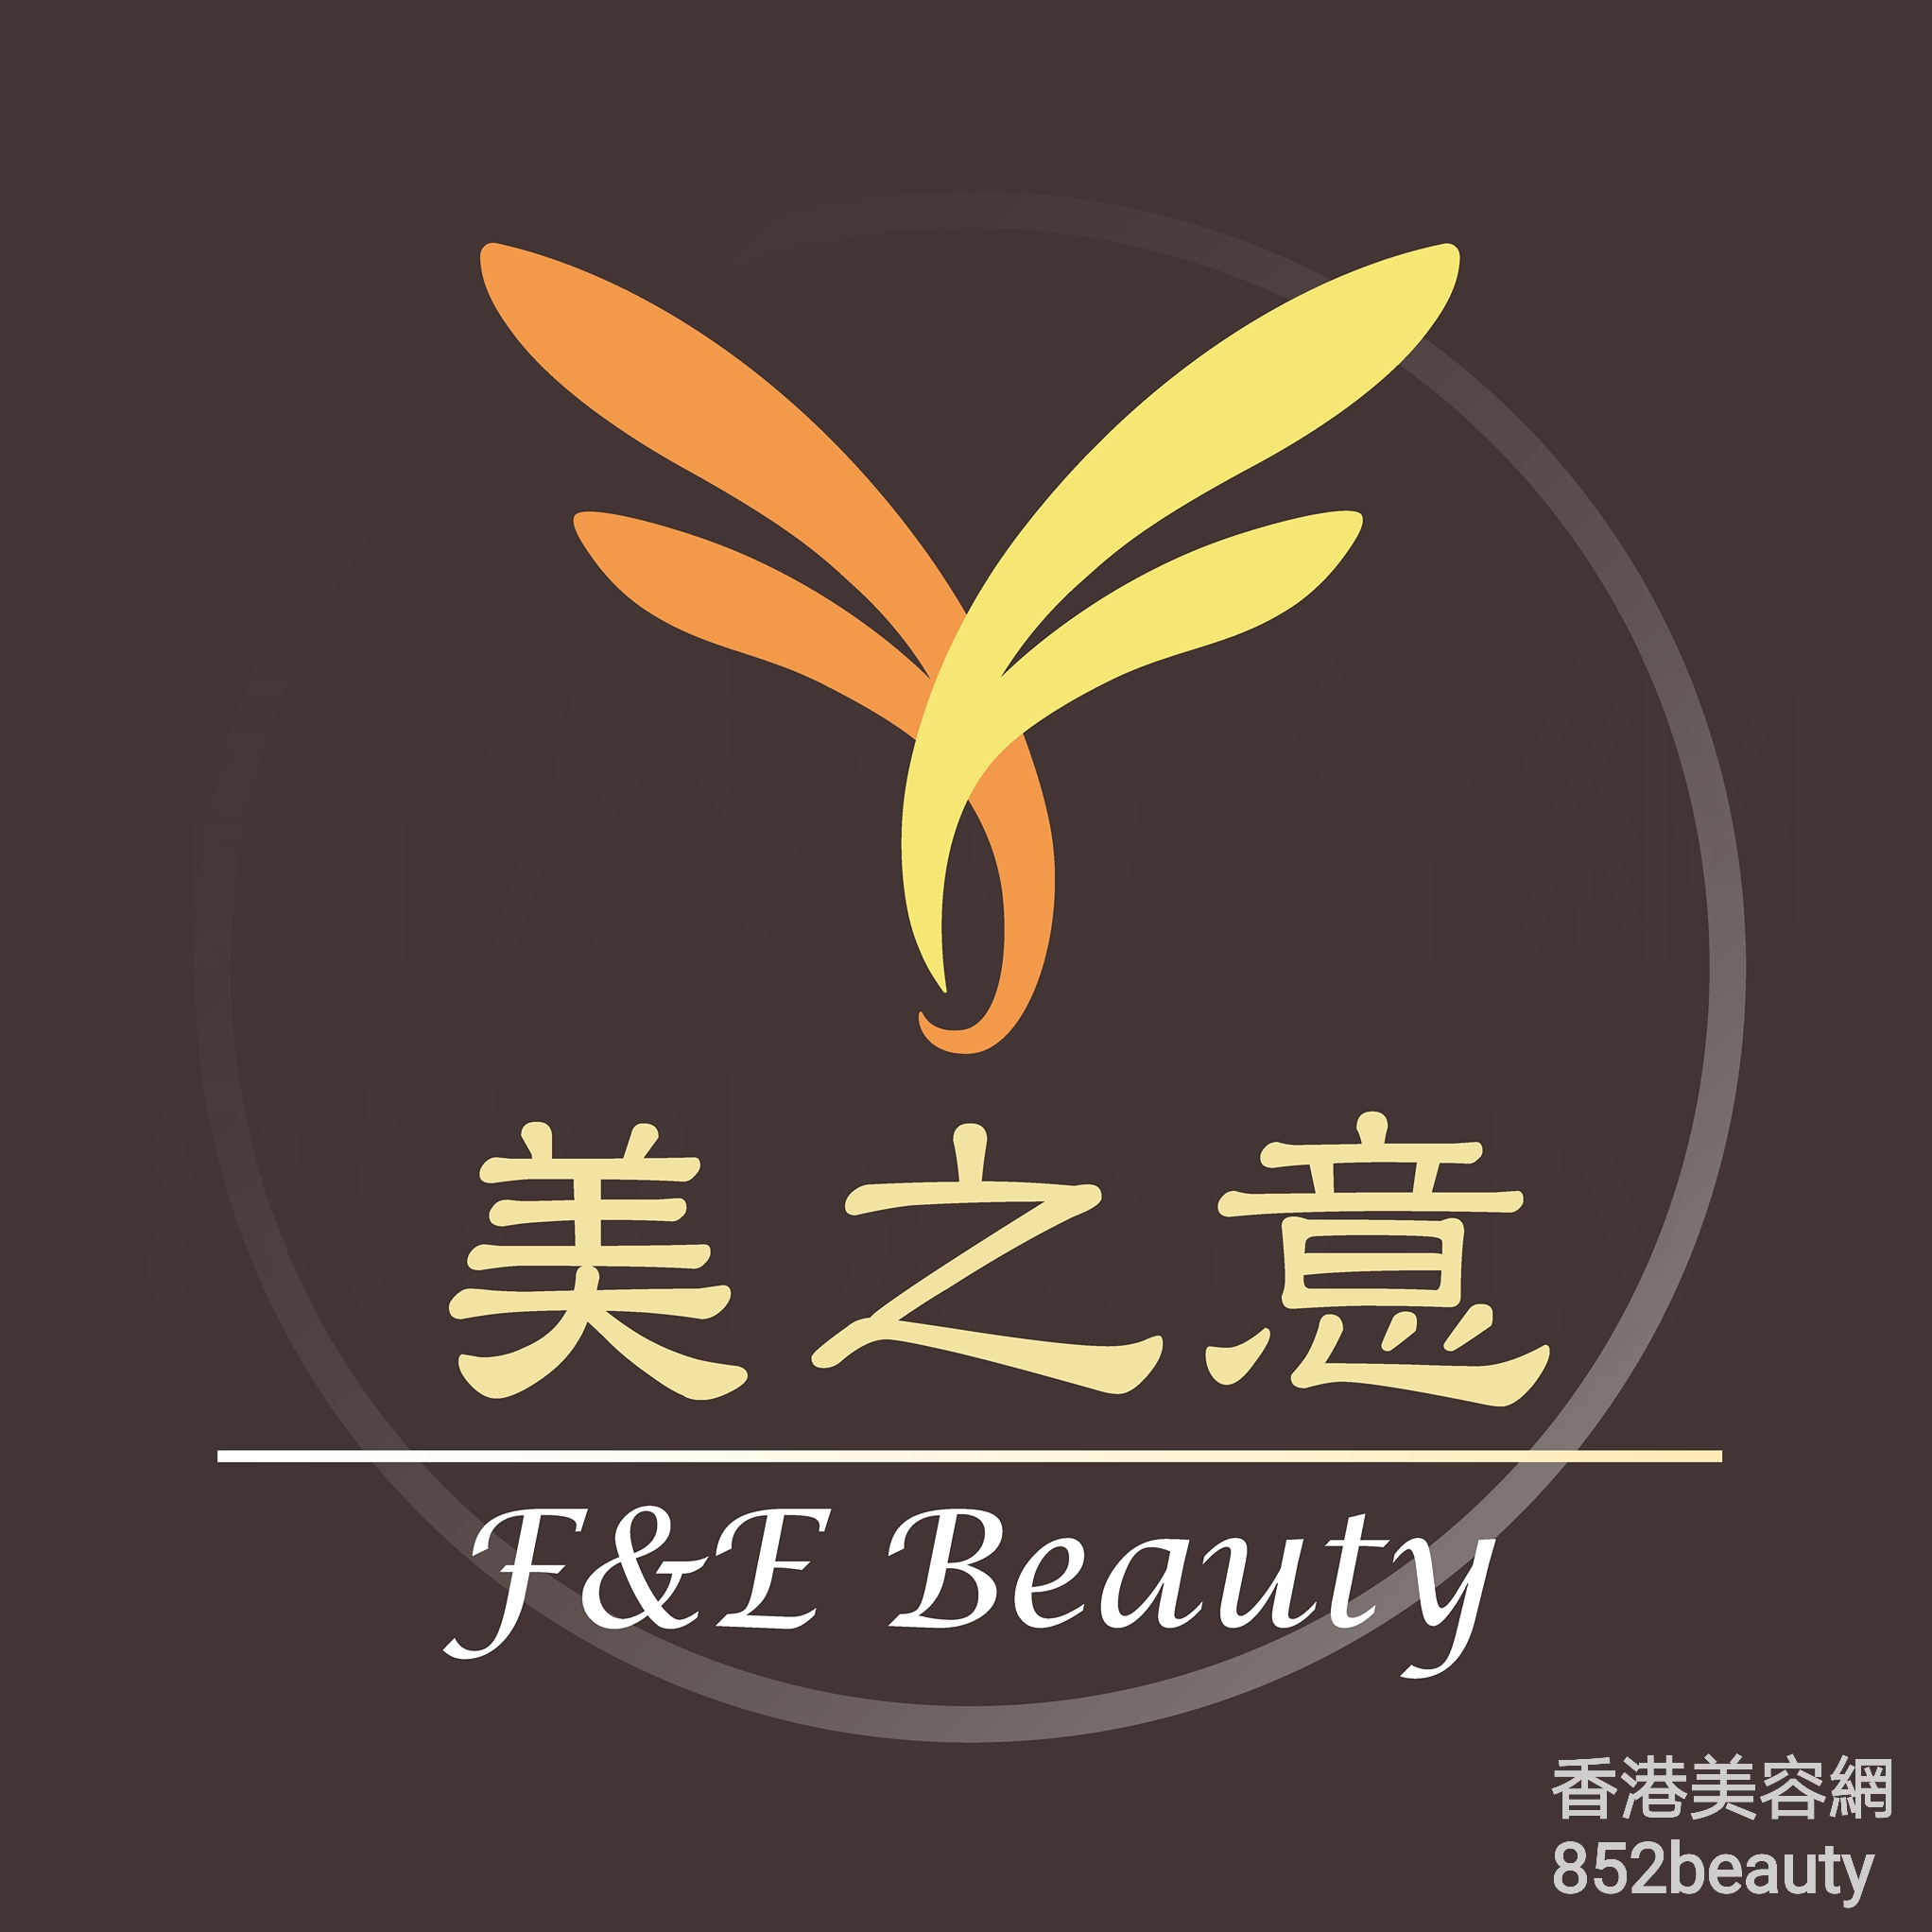 香港美容網 Hong Kong Beauty Salon 美容院 / 美容師: 美之意專業美容